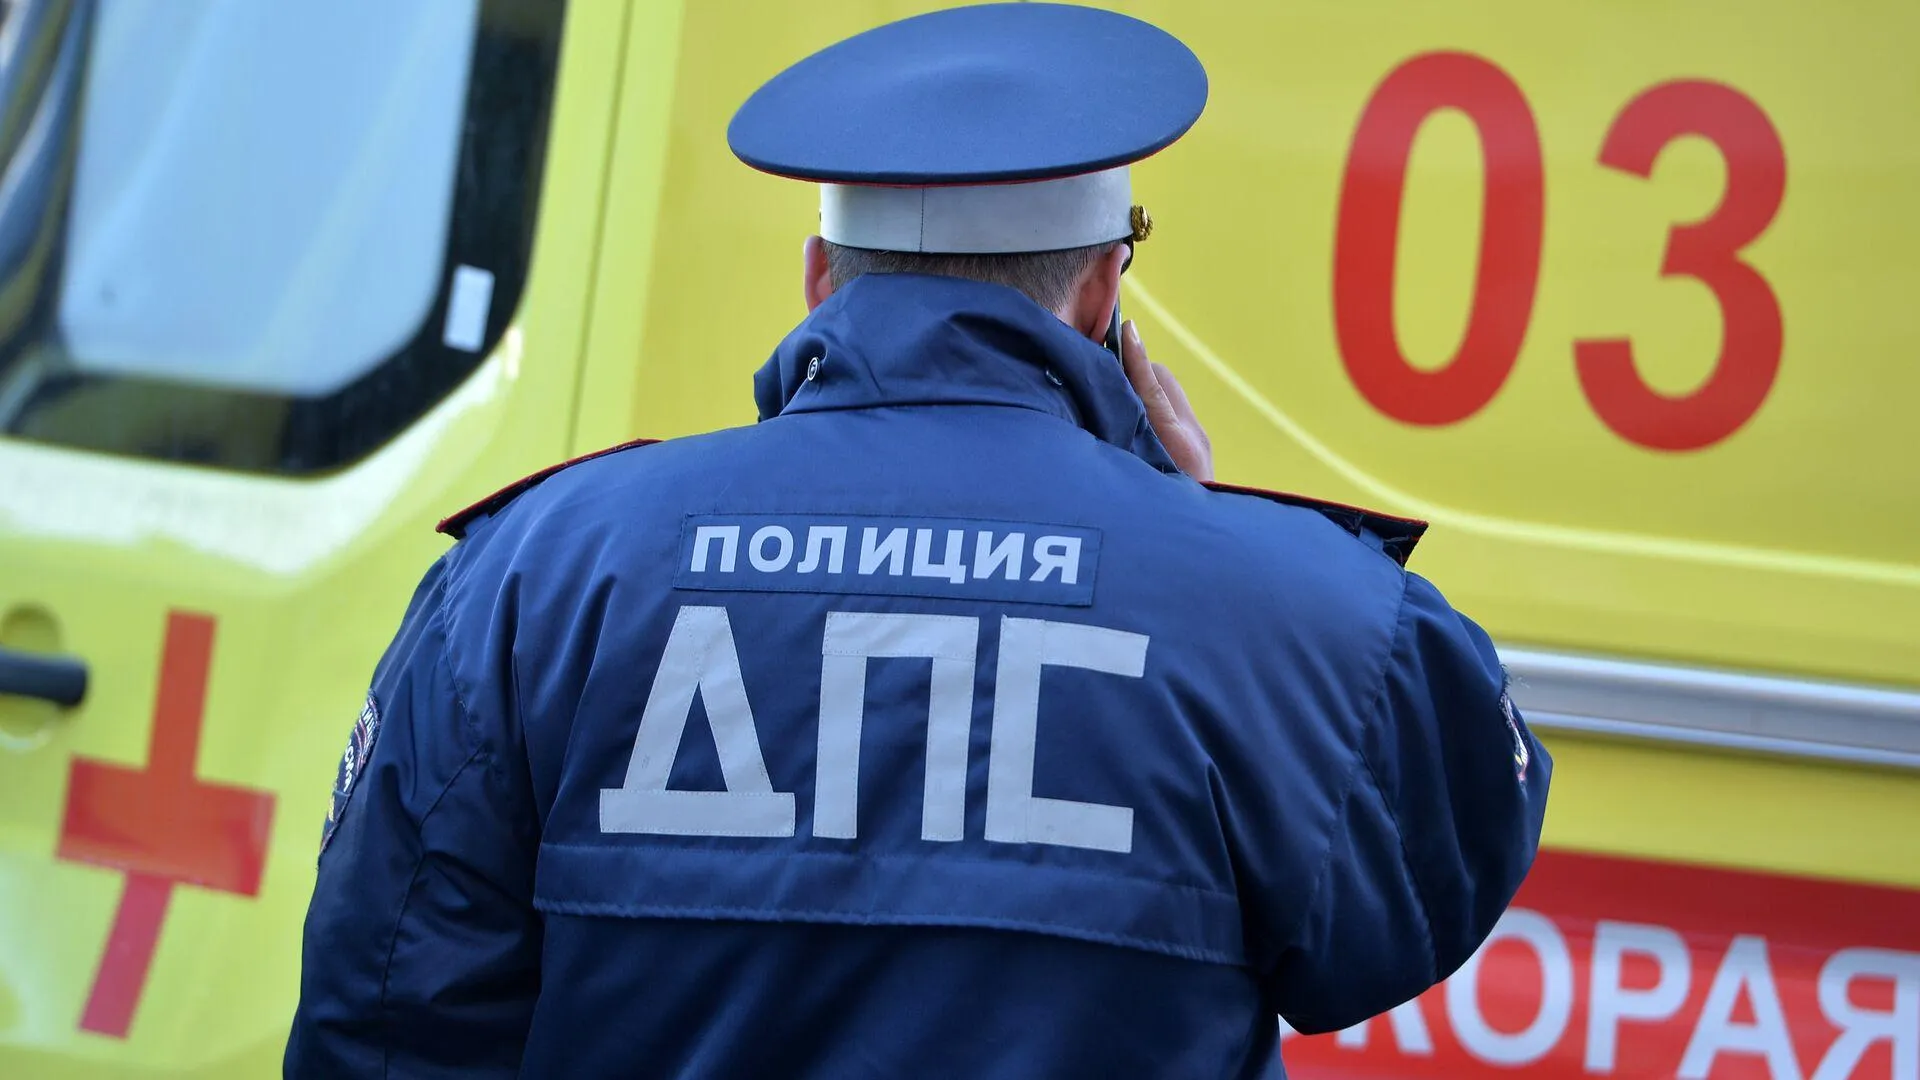 Беременная женщина и мужчина пострадали в ДТП на юго-востоке Москвы